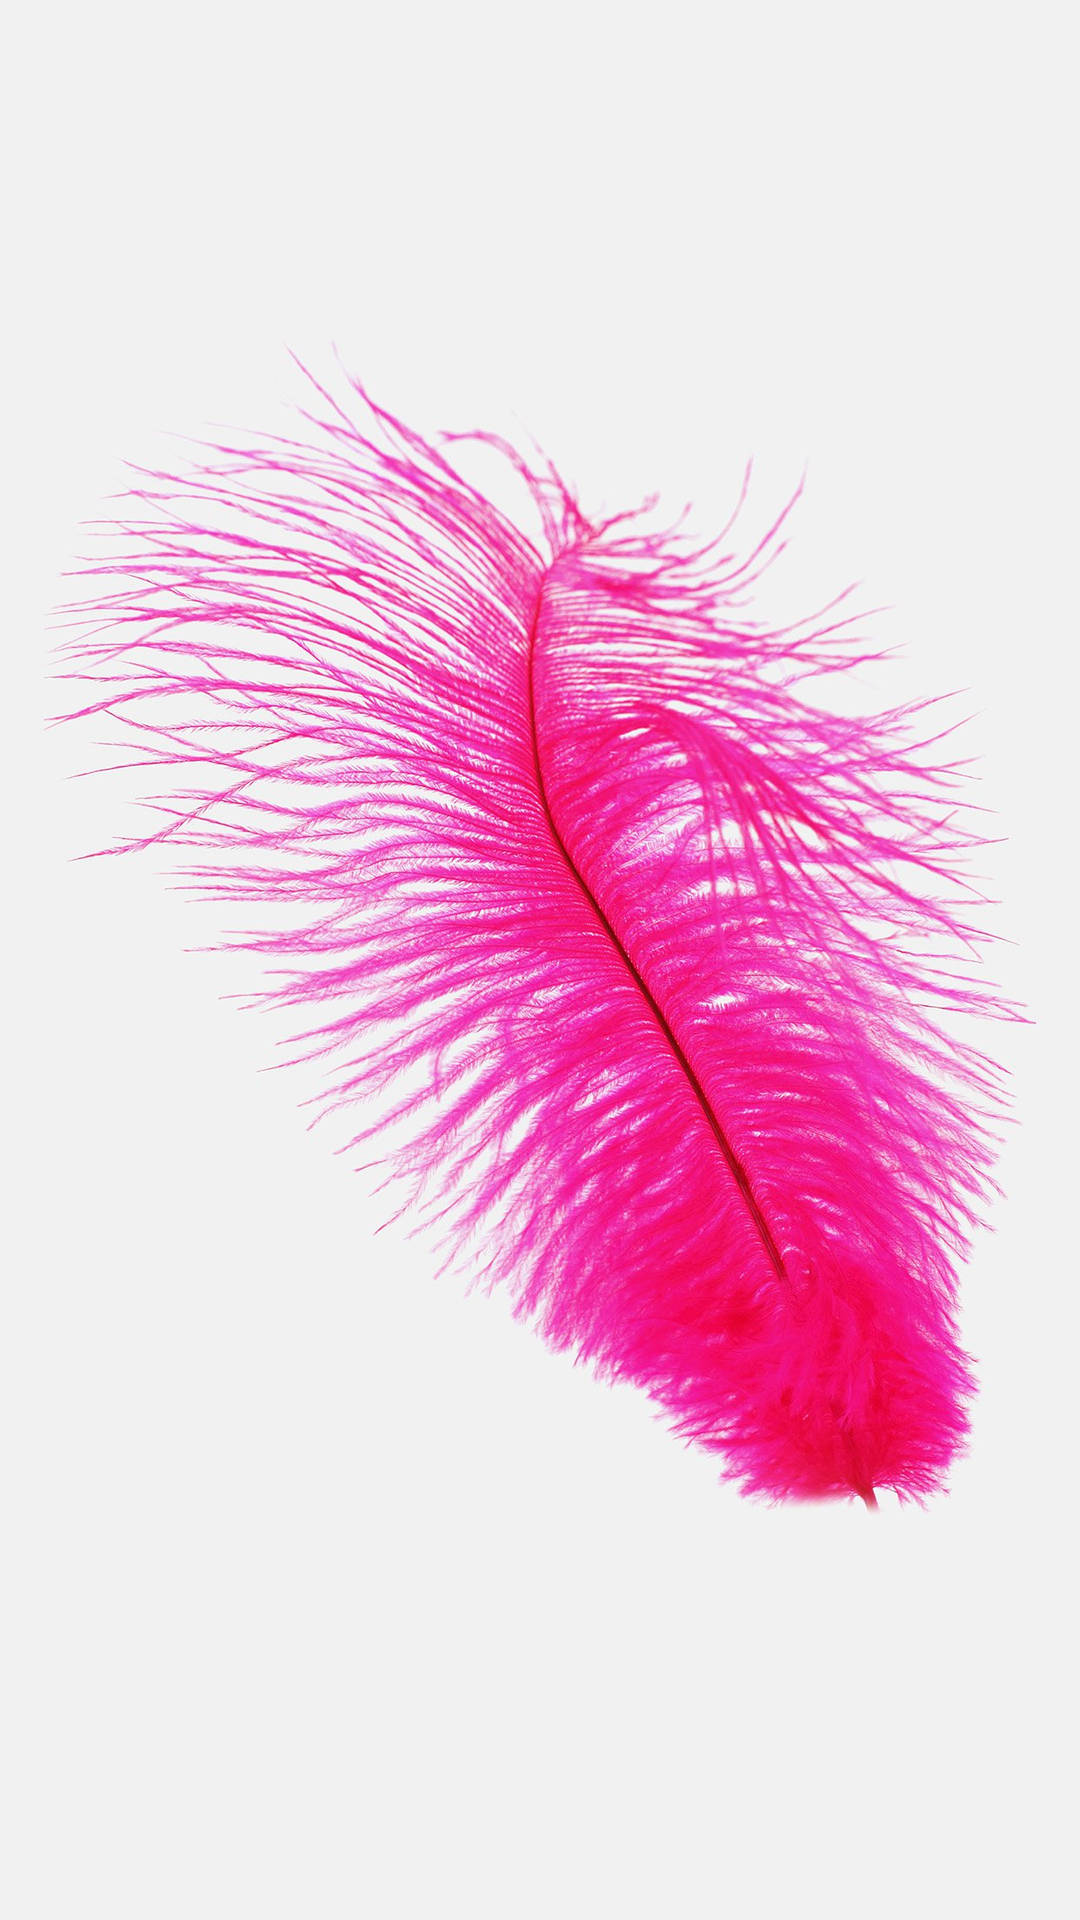 Fondode Pantalla Para Smartphone Con Plumas De Avestruz De Color Rosa Fucsia. Fondo de pantalla